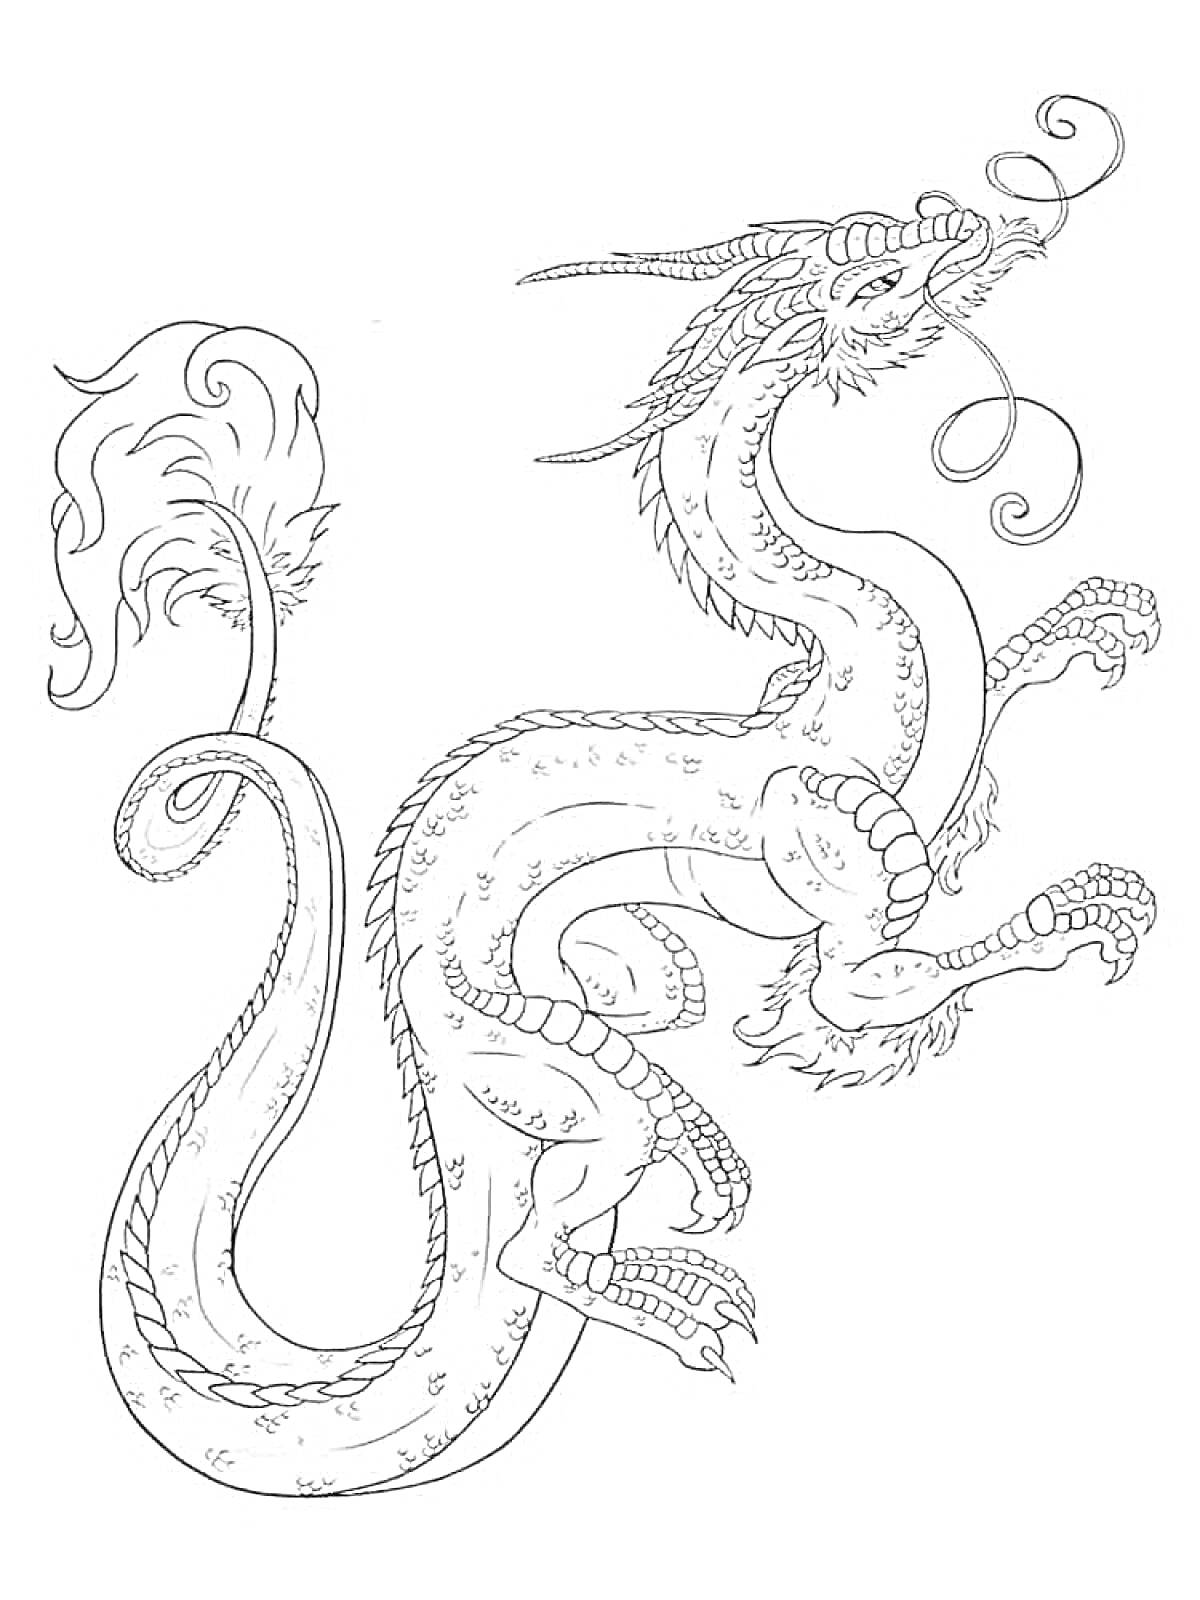 Китайский дракон с длинным телом и большими лапами, украшенный усами и рогами